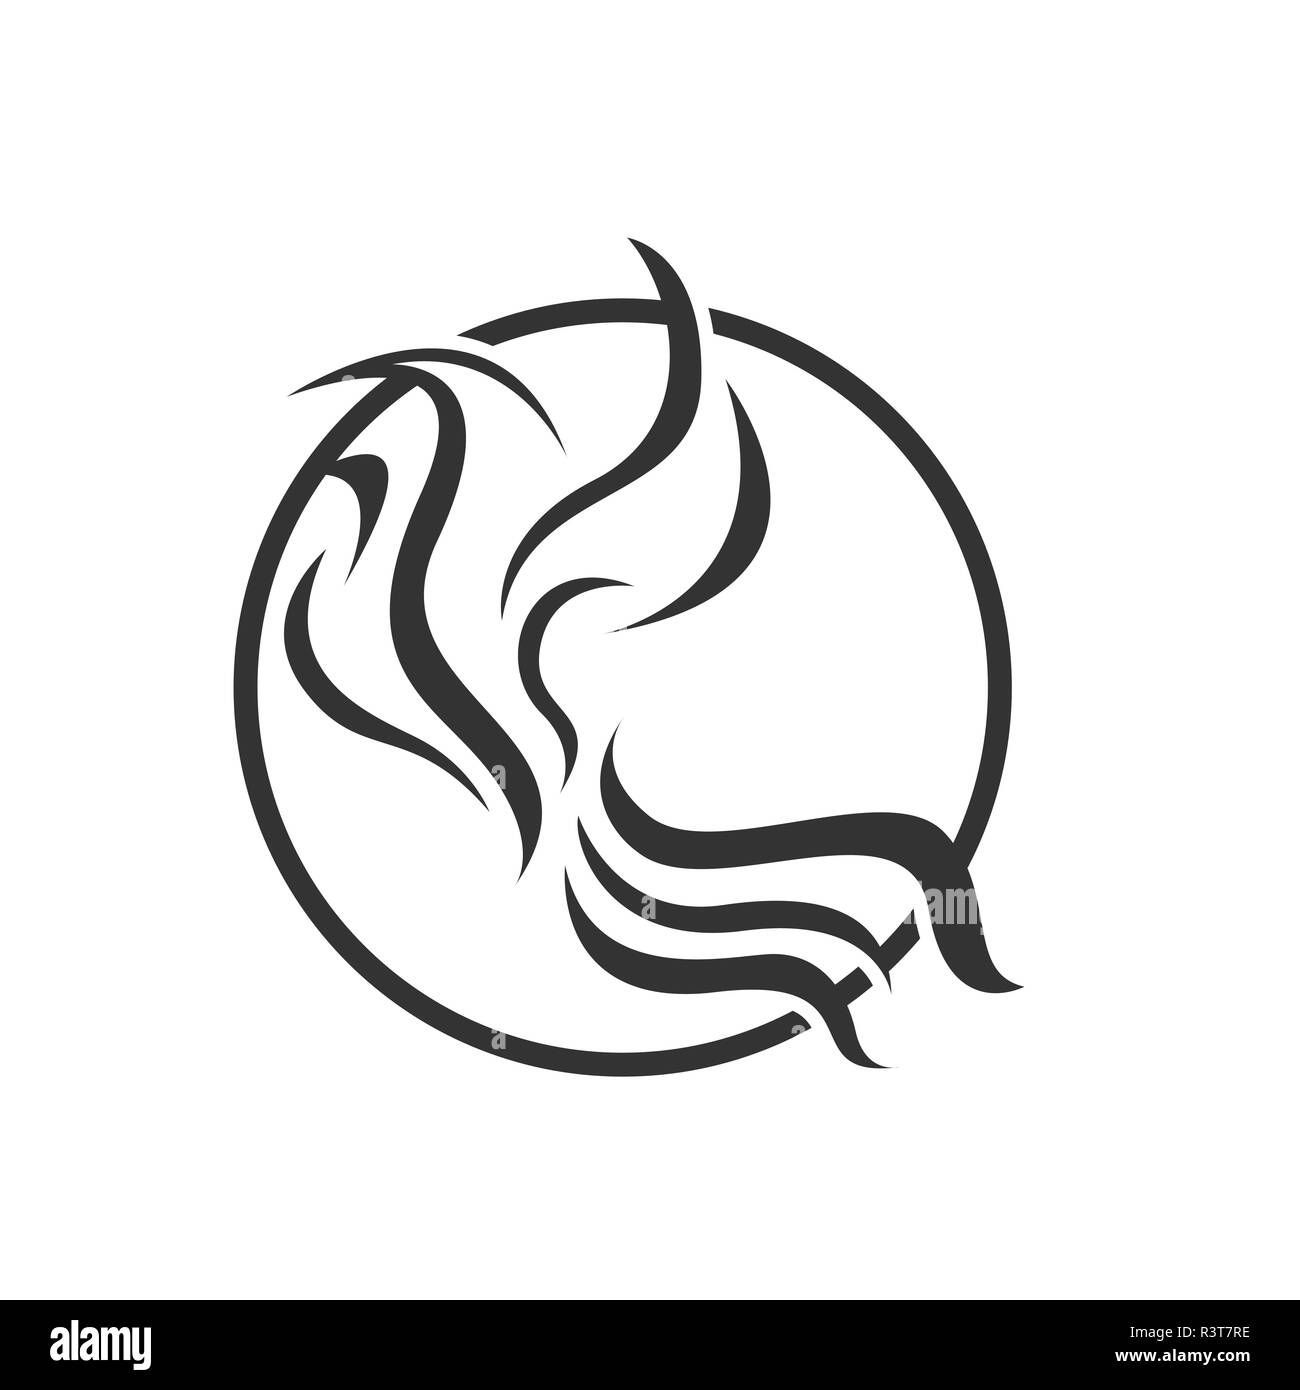 Abstract bird logo design in bianco e nero a colori. Isolato su sfondo bianco colore Illustrazione Vettoriale